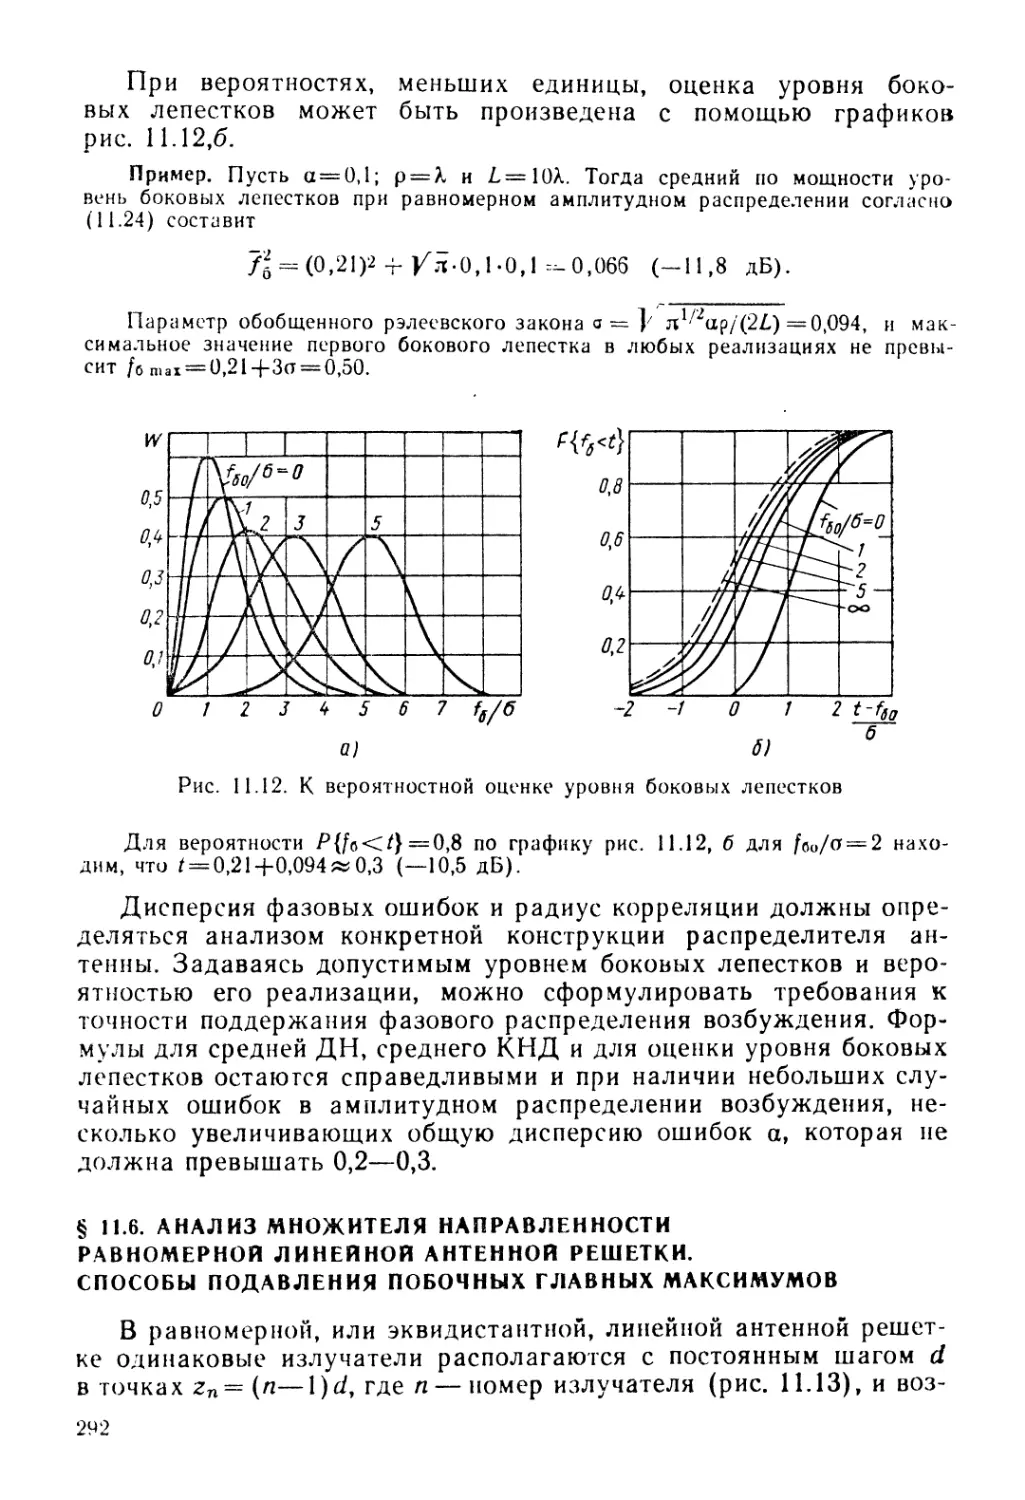 § 11.6. Анализ множителя направленности равномерной линейной антенной решетки